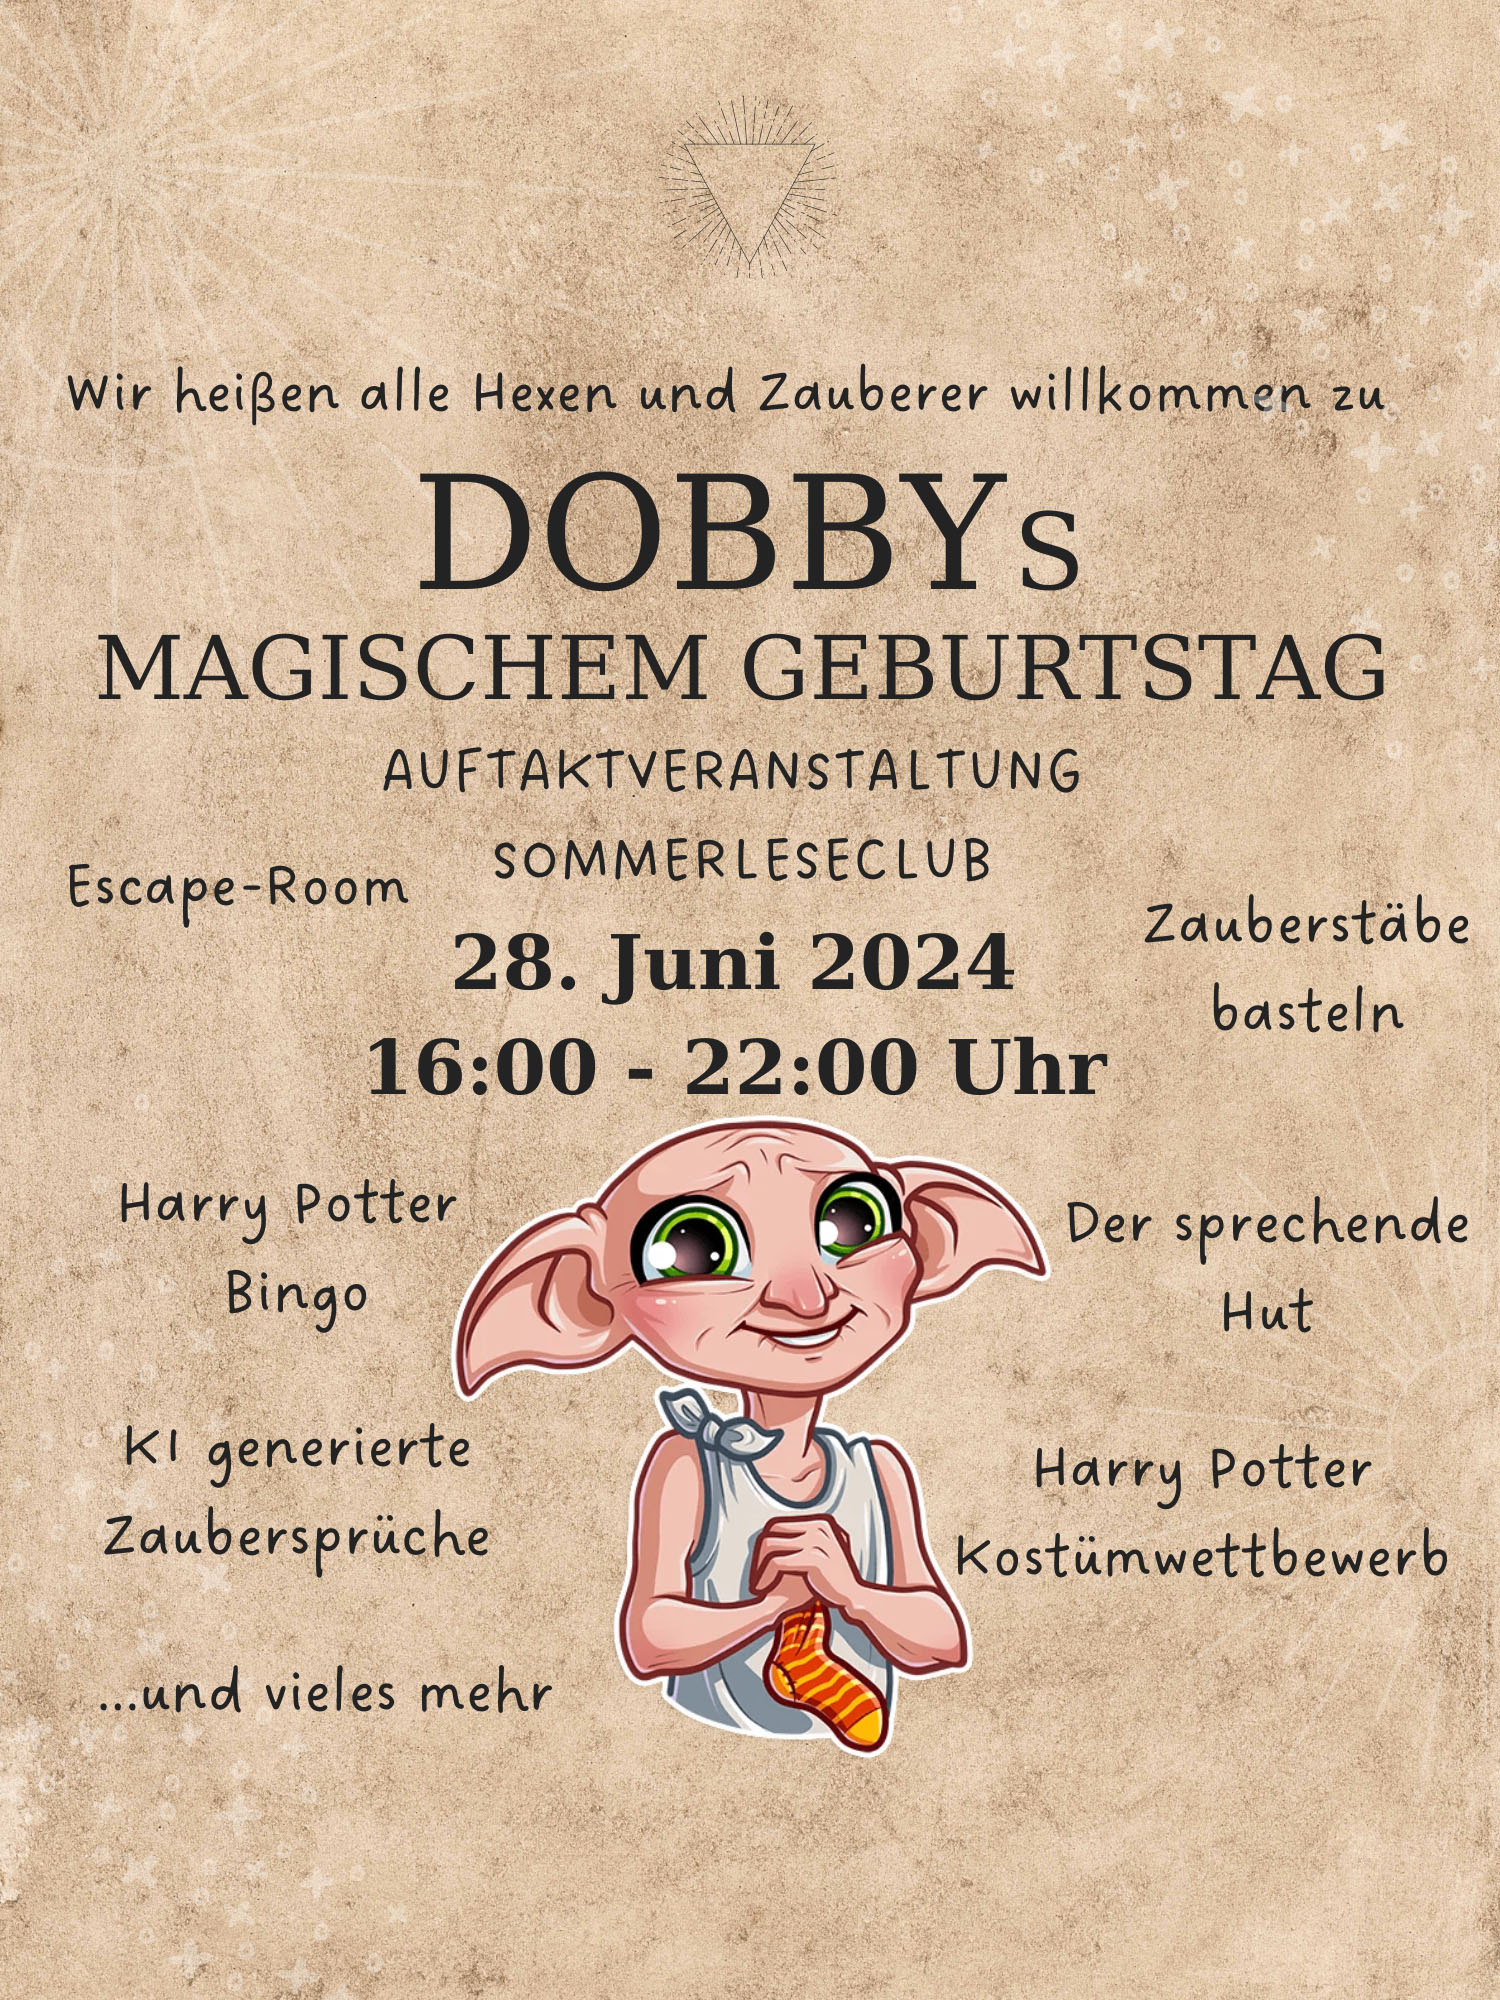 Dobbys Geburtstag und Auftakt SommerLeseClub am 28. Juni 2024